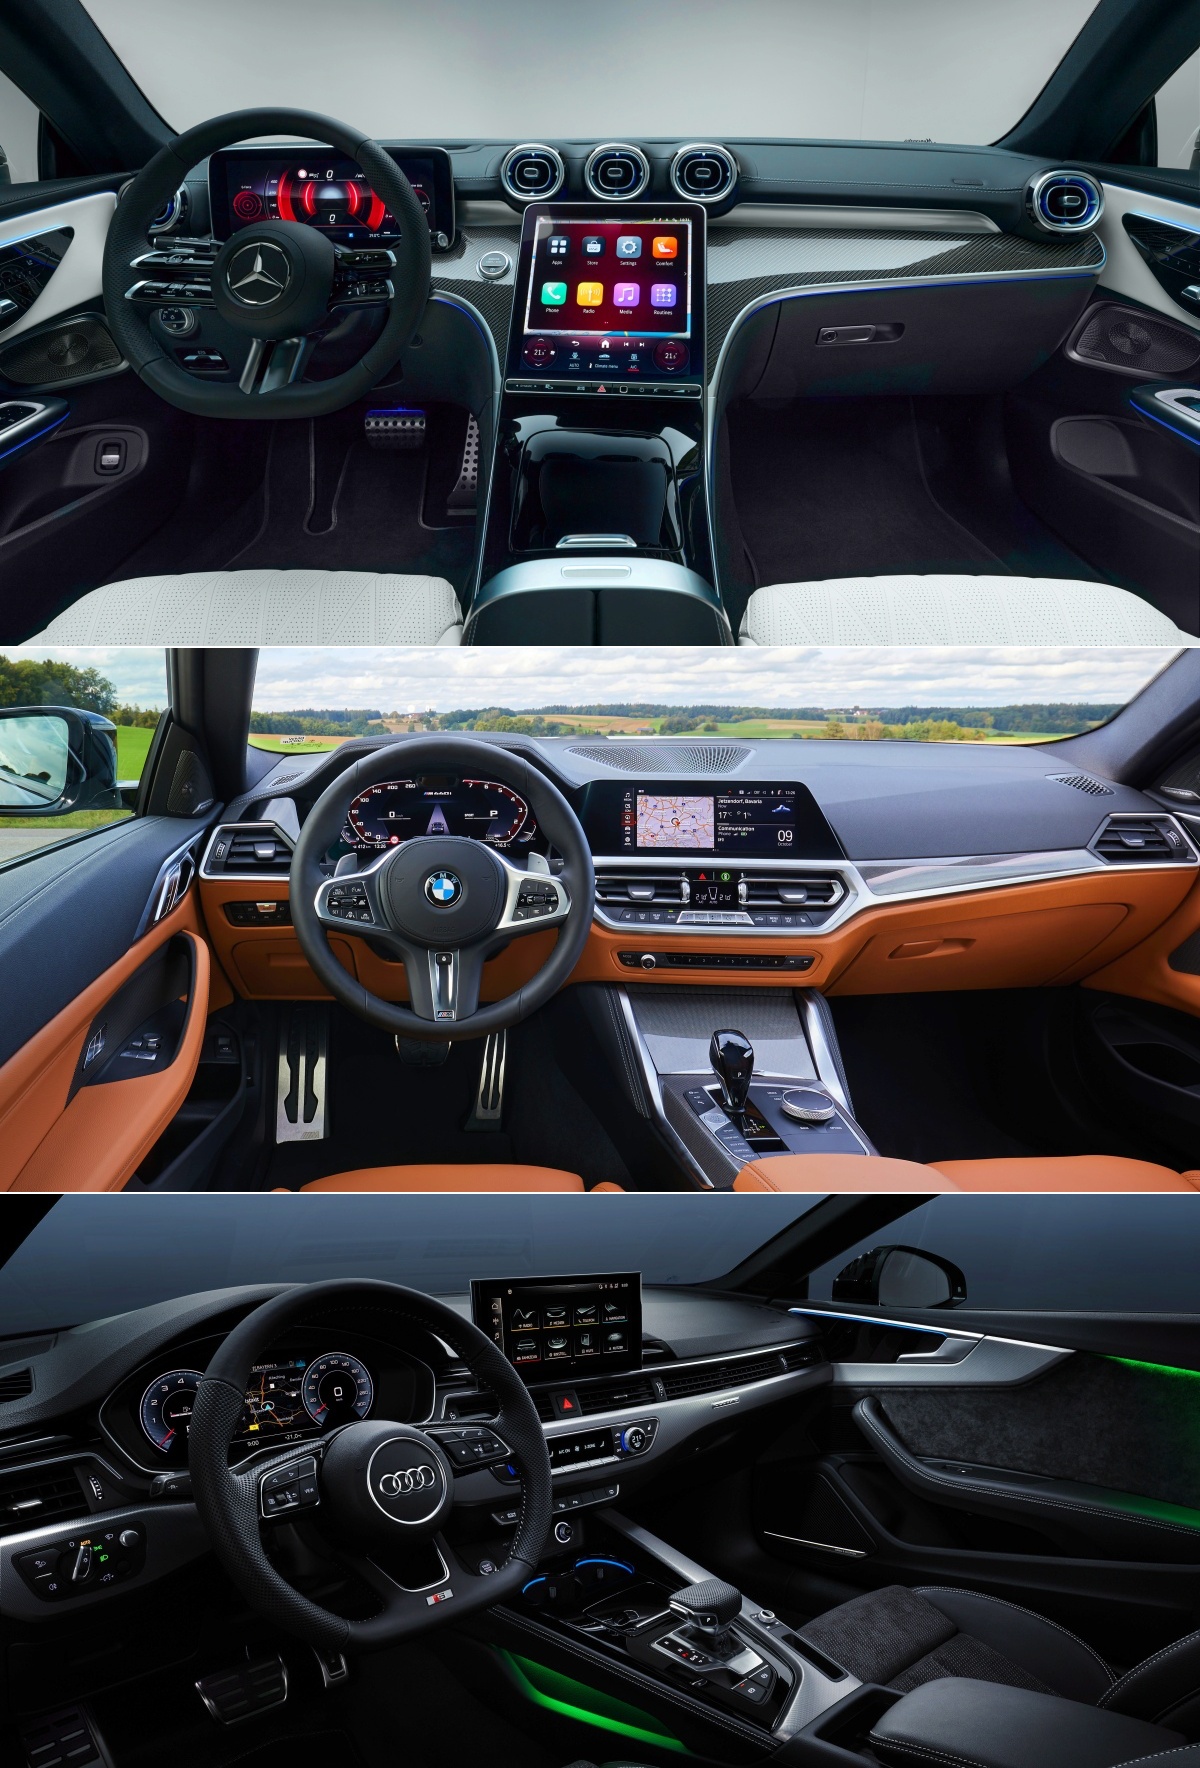 '벤츠 CLE 쿠페', 'BMW 4 시리즈 쿠페', '아우디 A5 쿠페'의 내부 사진이다.